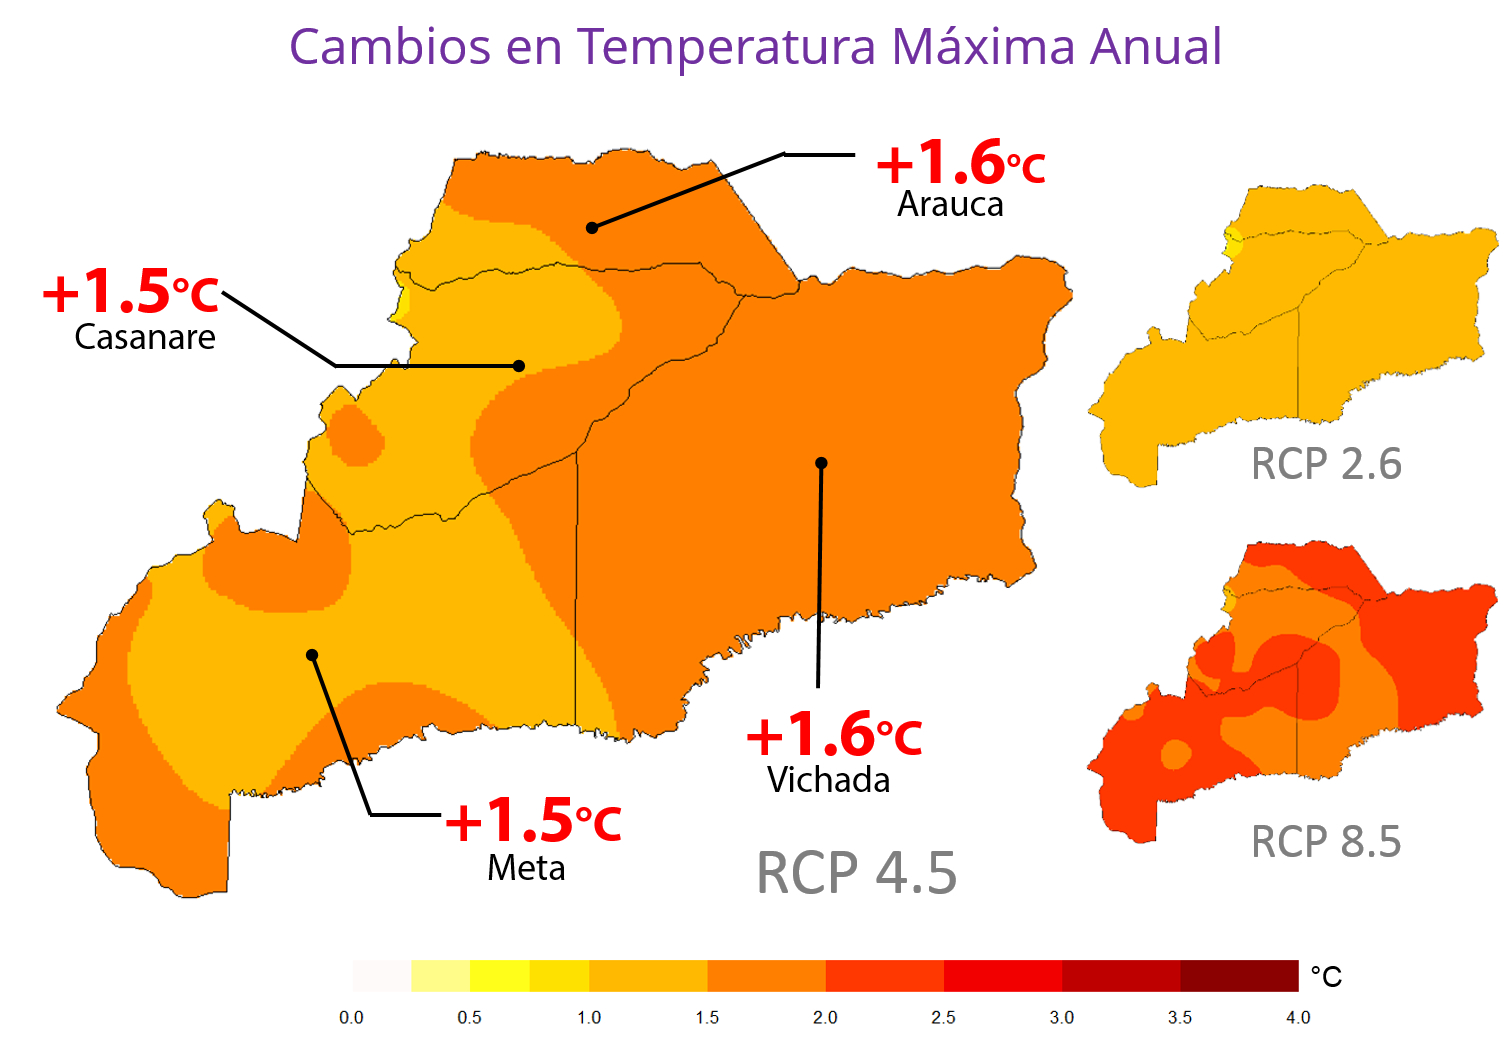 Cambios proyectados en temperatura máxima anual para la Orinoquía a 2040s, para 3 escenarios de emisiones: RCP 2.6 (escenario optimista), 4.5 (escenario intermedio) y 8.5 (escenario pesimista).